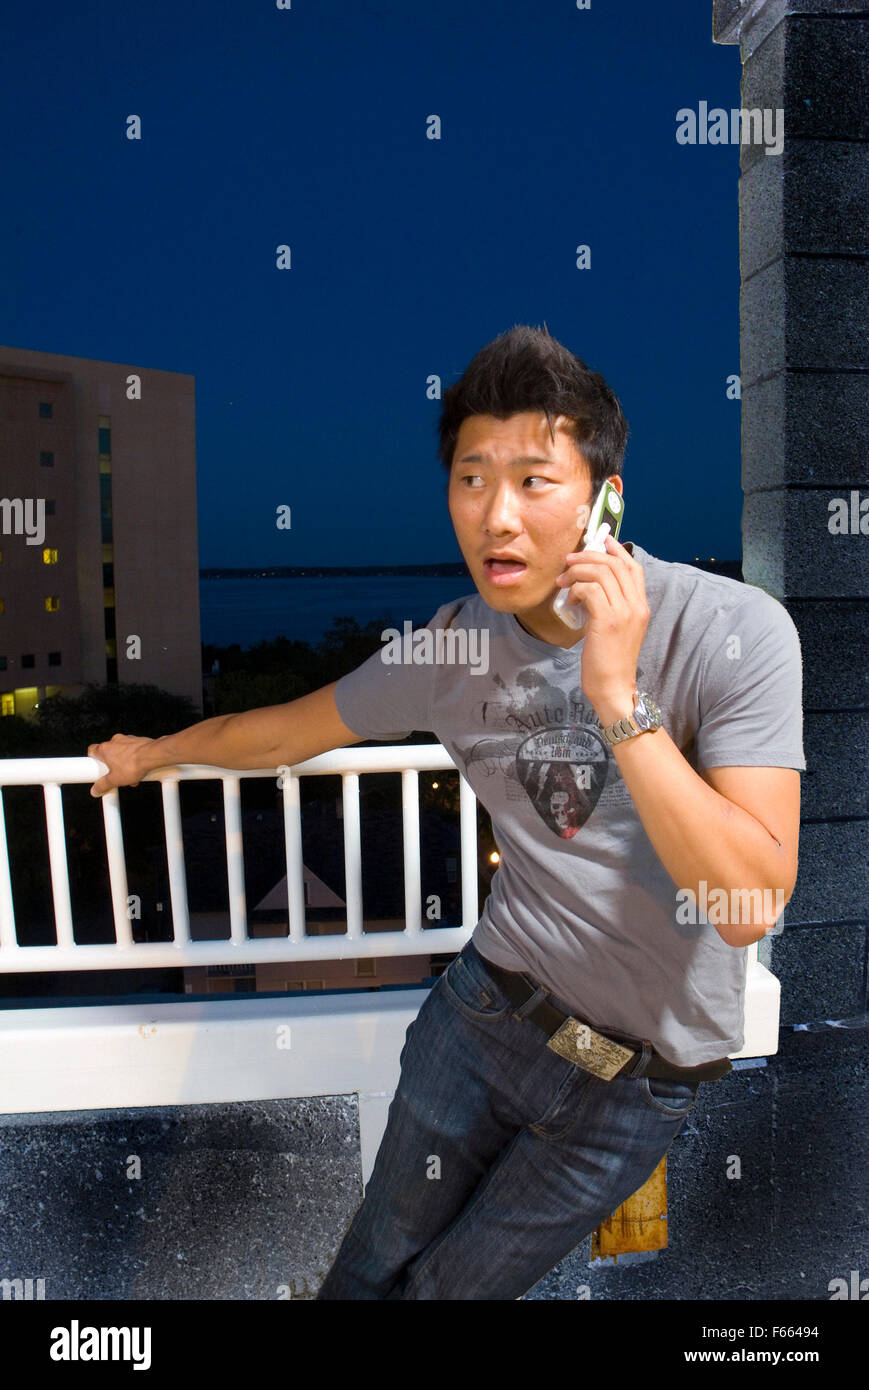 Asiatische Mann auf einem Flipchart Telefon oben auf einem Gebäude nachts. Er hat einen angeregten Ausdruck auf dem Gesicht. von der Kamera entfernt. Stockfoto